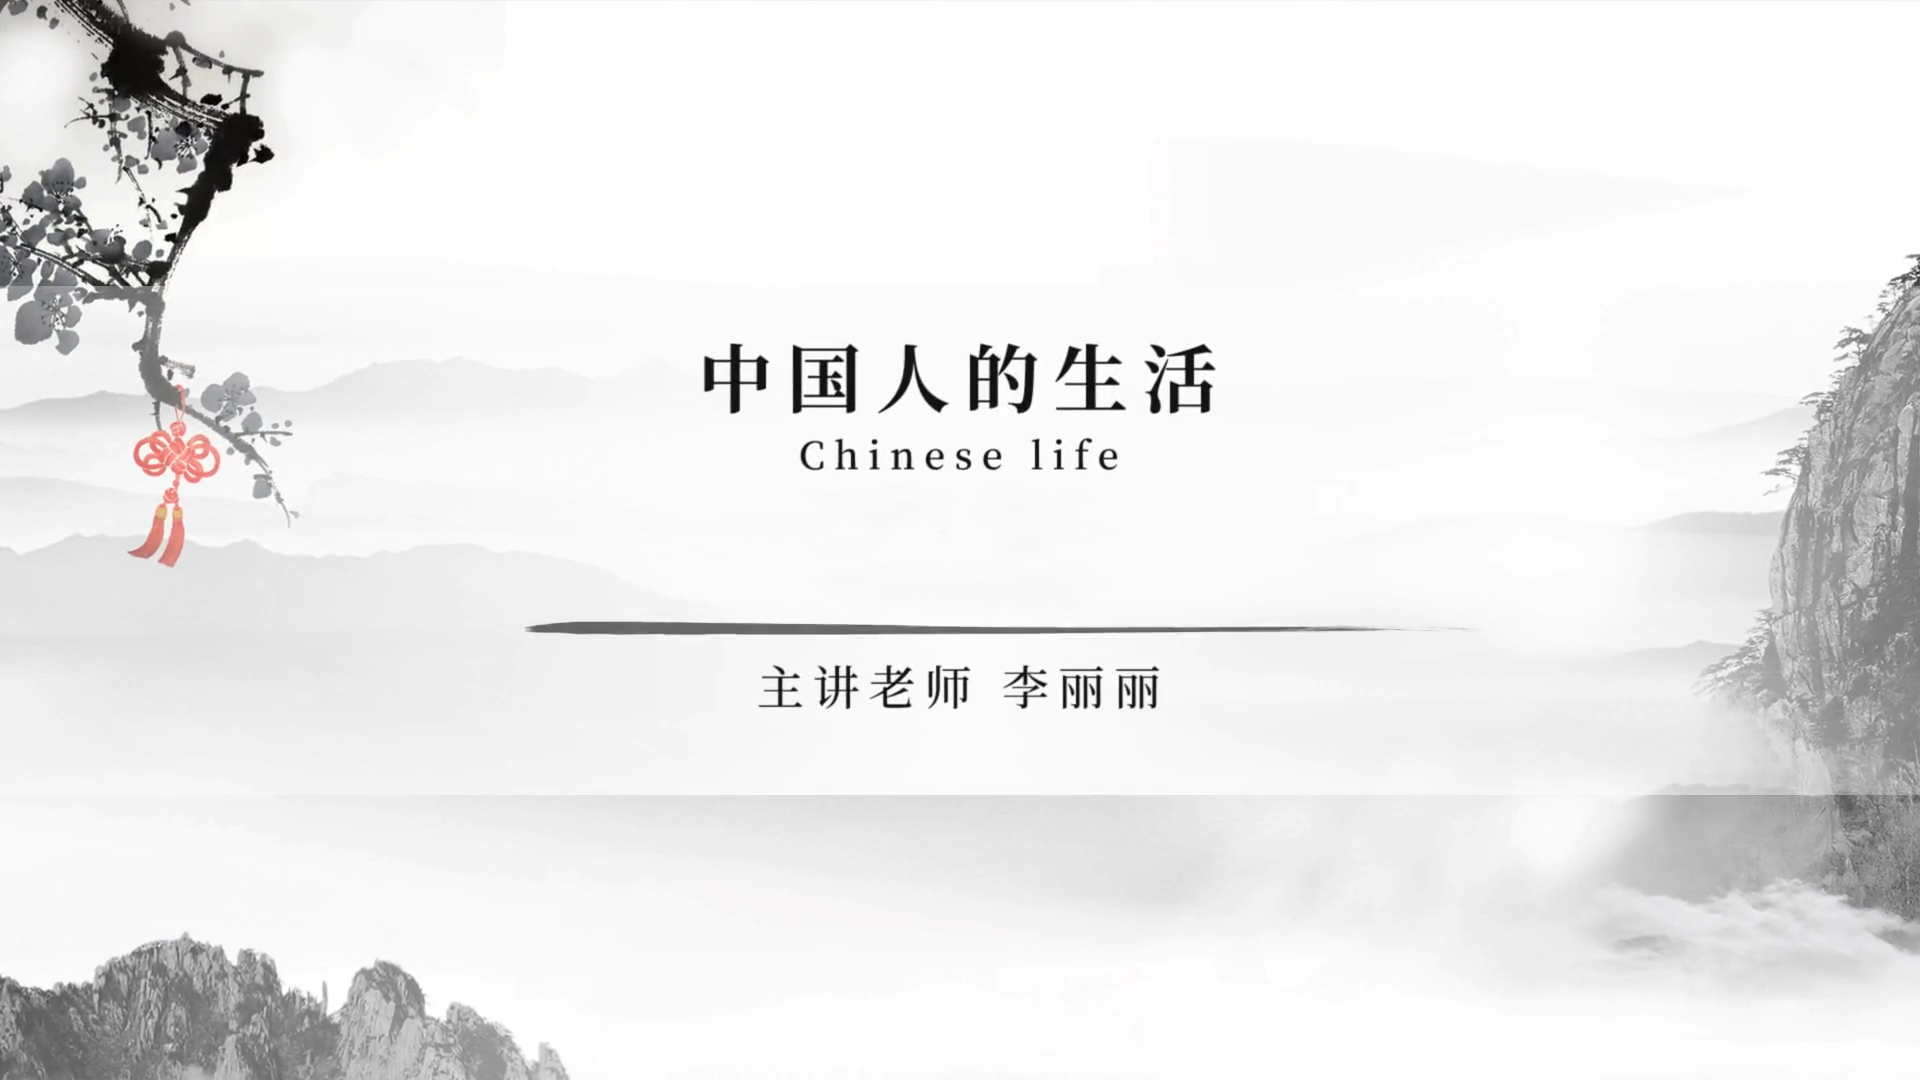 Chinese life